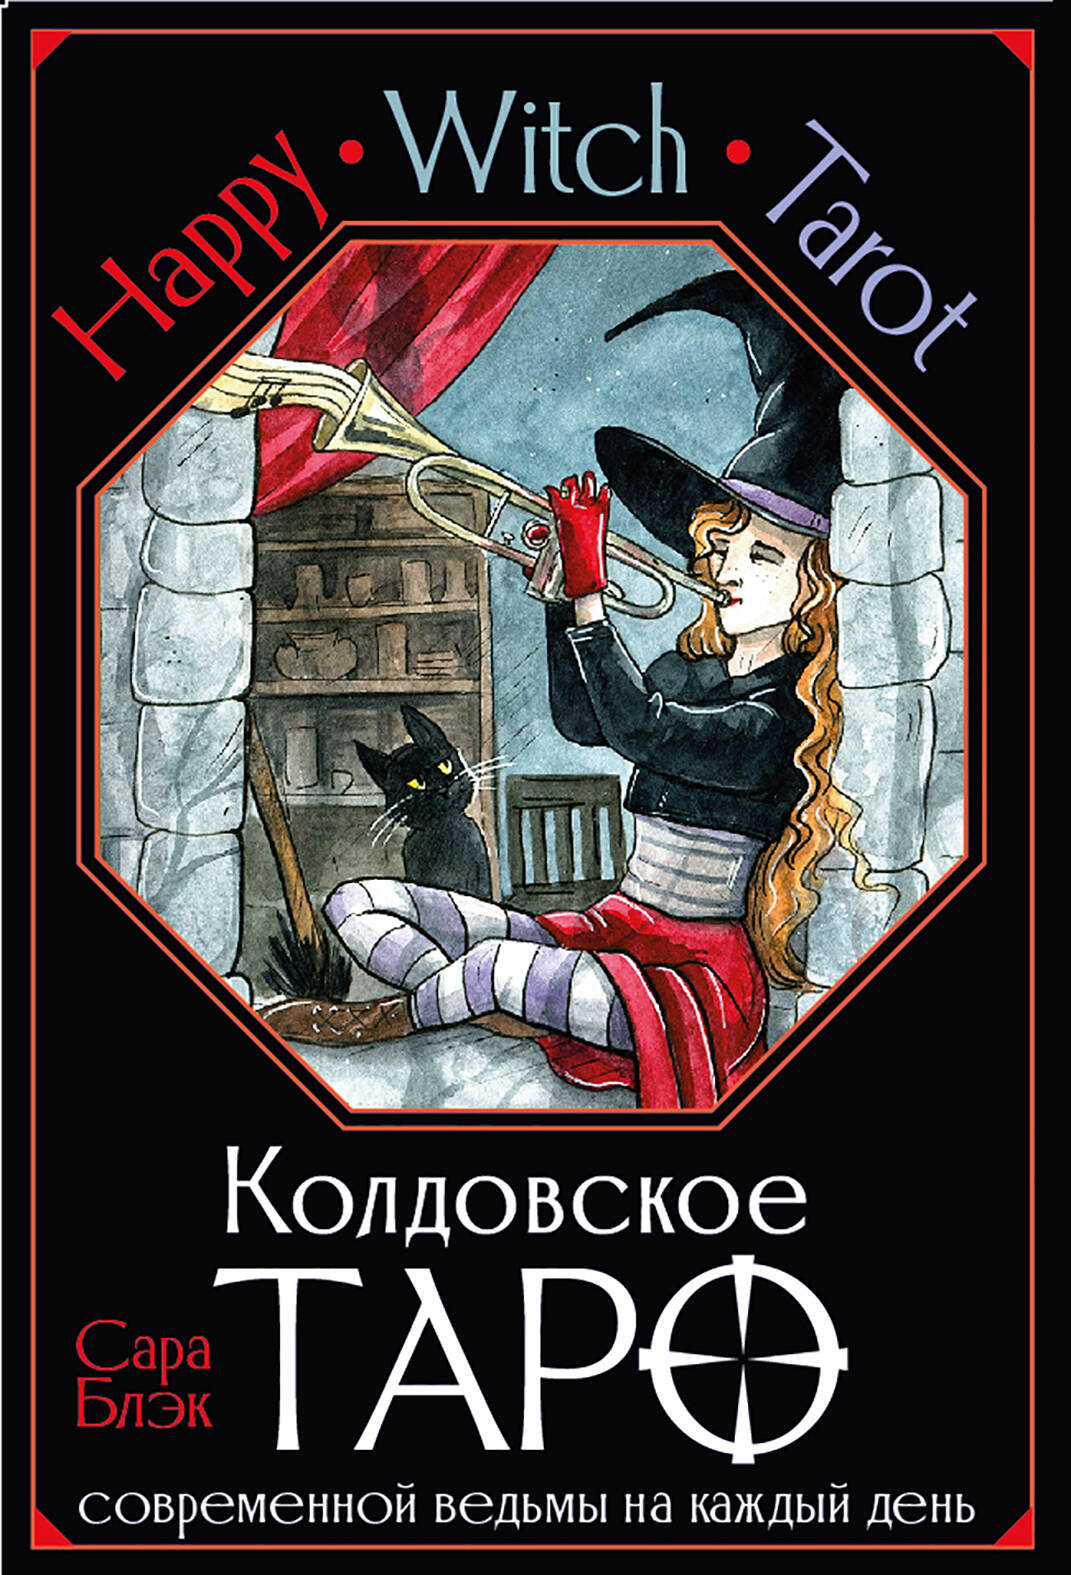 Блэк Сара Happy Witch Tarot. Колдовское Таро современной ведьмы на каждый день (78 карт+инструкция) happy witch tarot колдовское таро современной ведьмы на каждый день блэк с